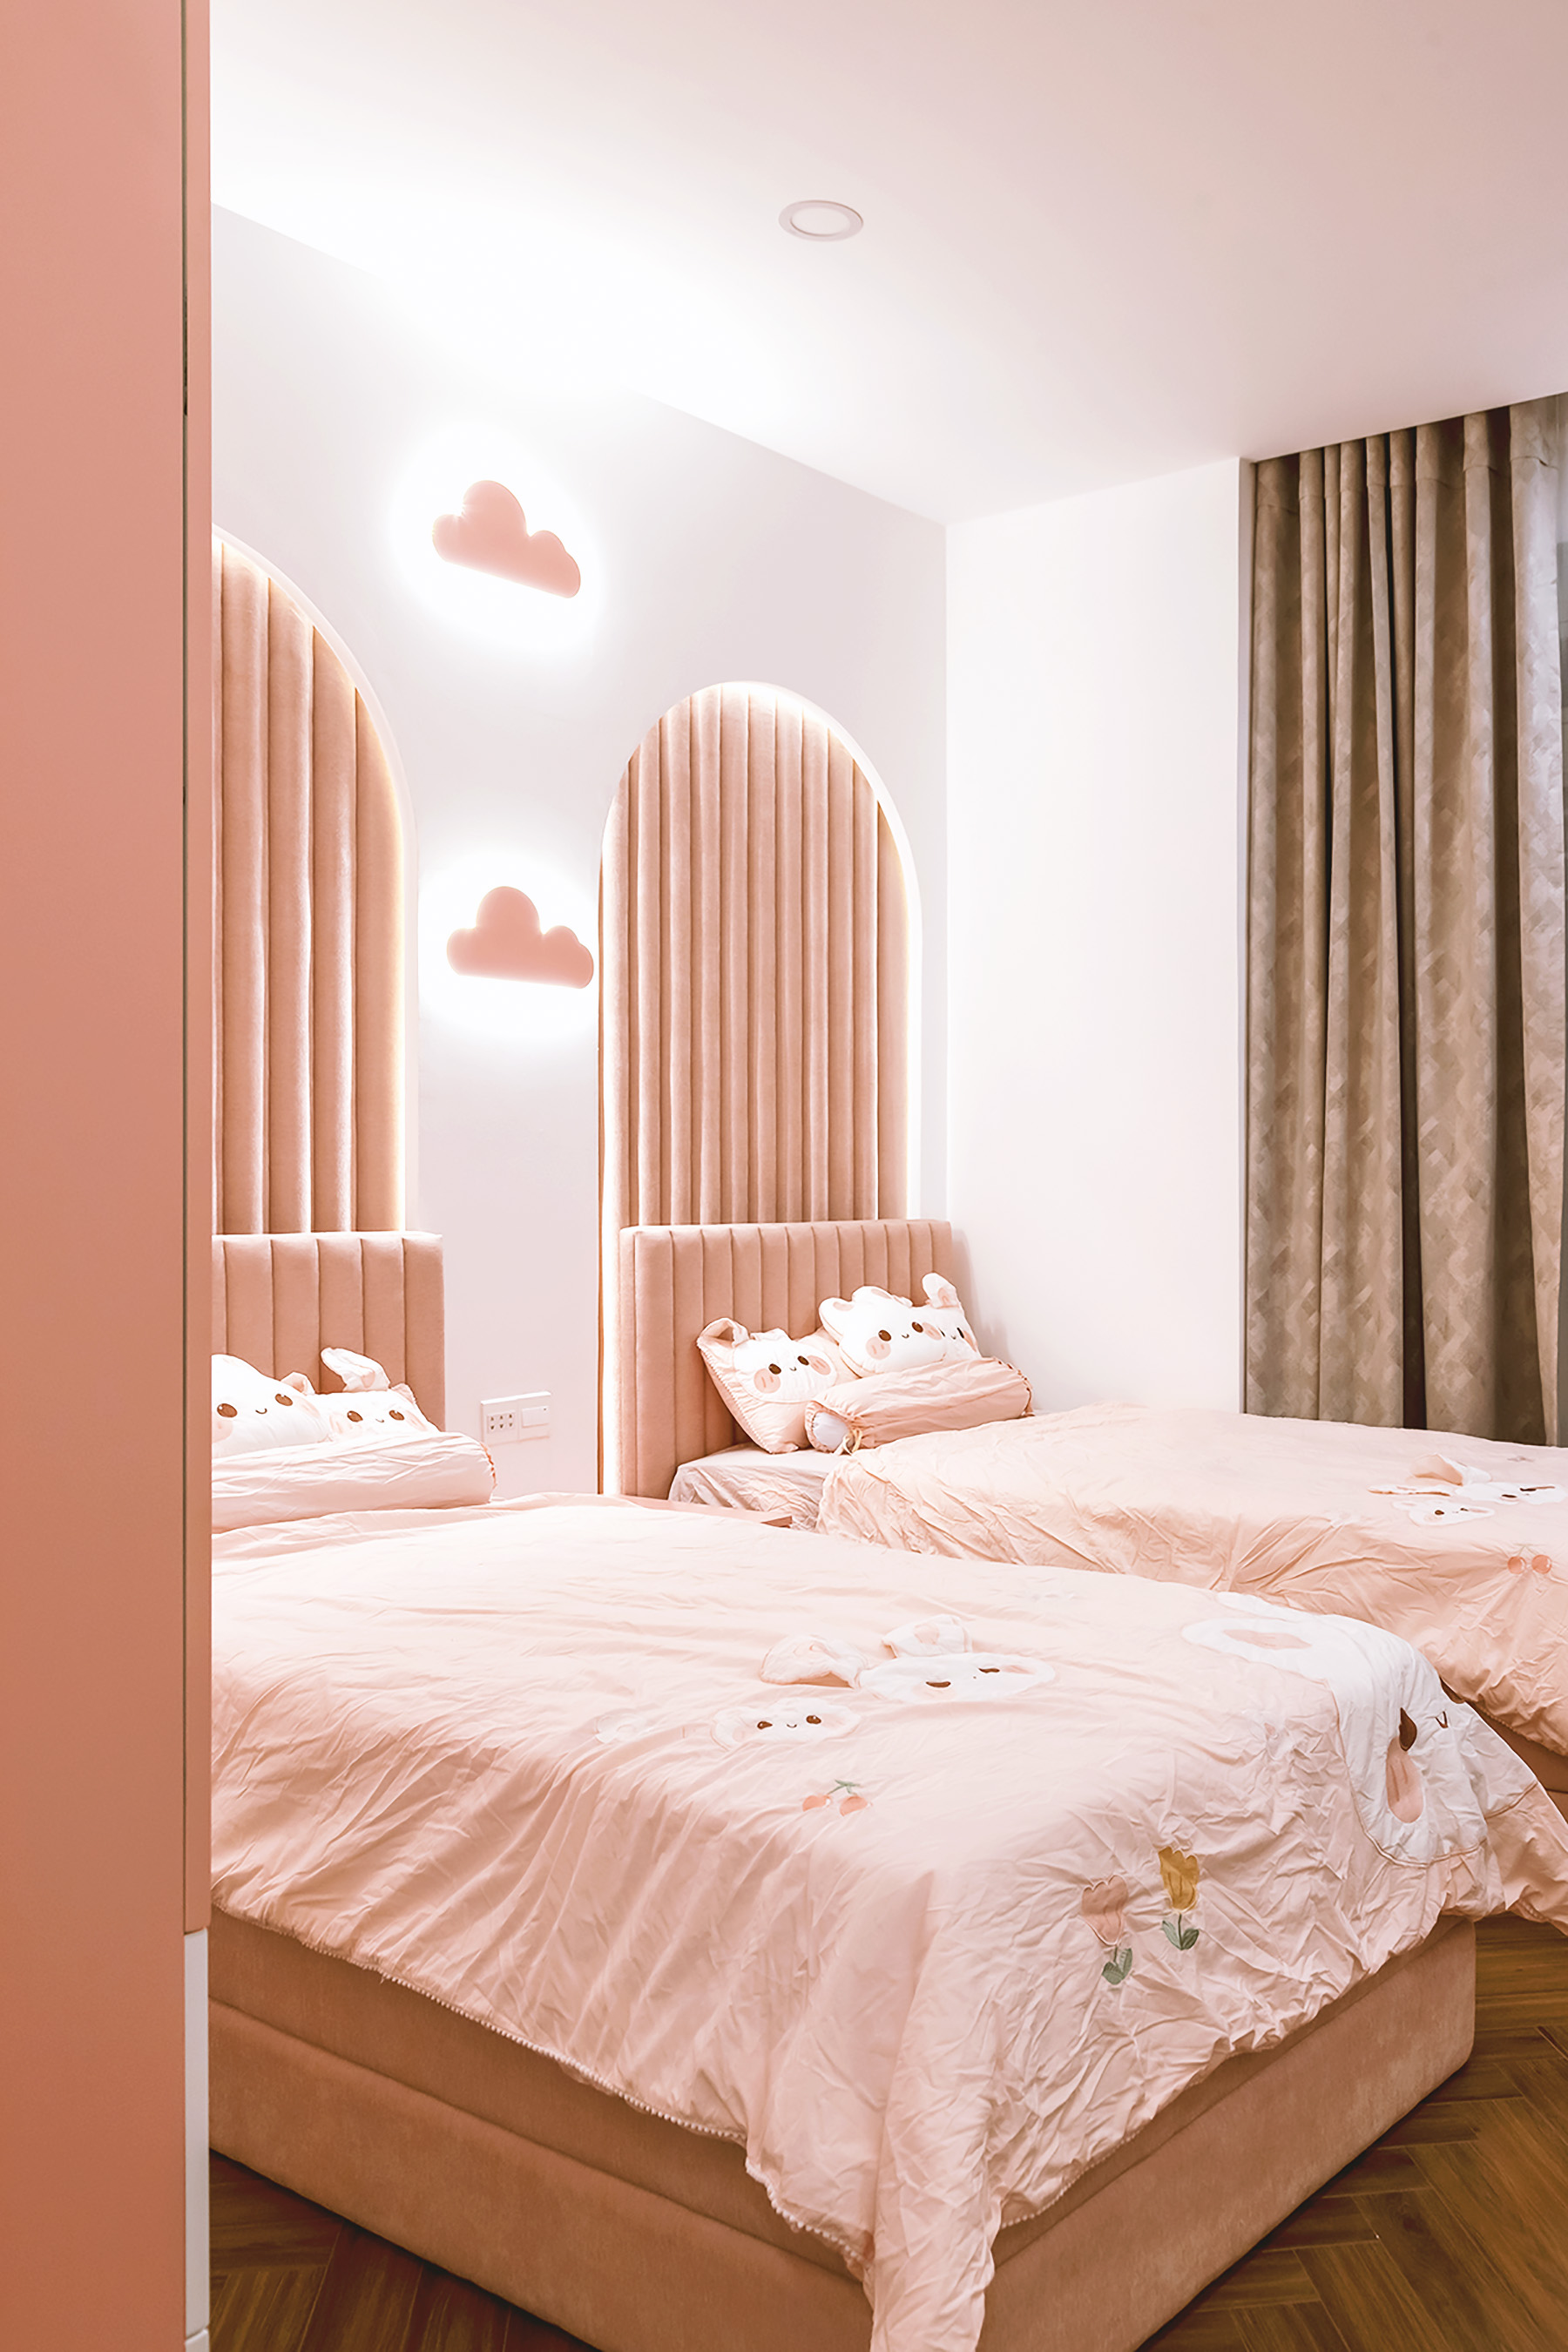 Phòng ngủ cho bé, phong cách Hiện đại Modern, hoàn thiện nội thất, căn hộ Saigon Pearl Topaz 2